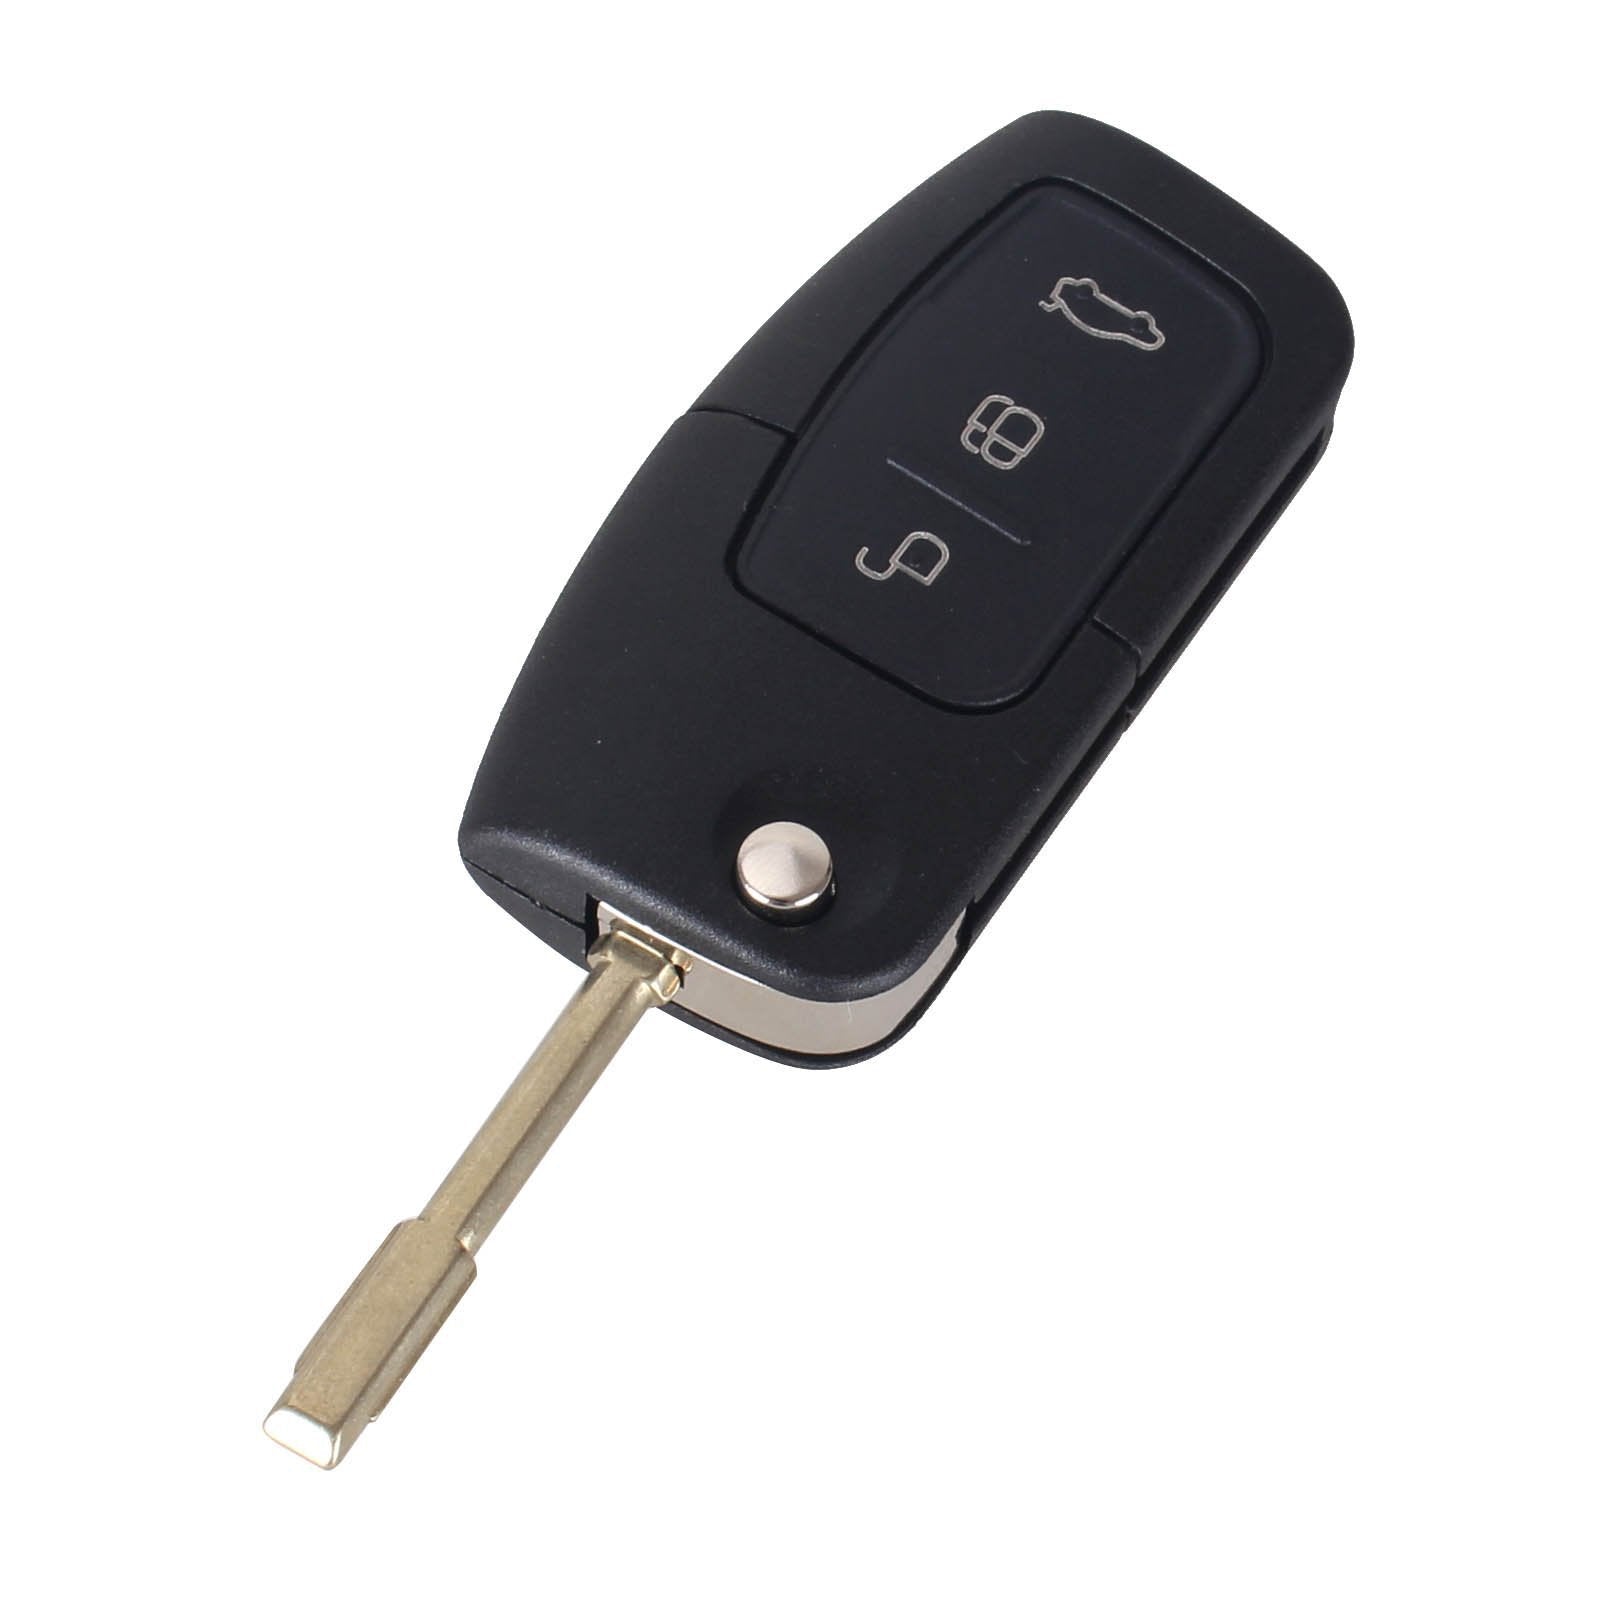 Fekete színű, 3 gombos Ford kulcs, bicskakulcs kerek buzogány kulcsszárral.